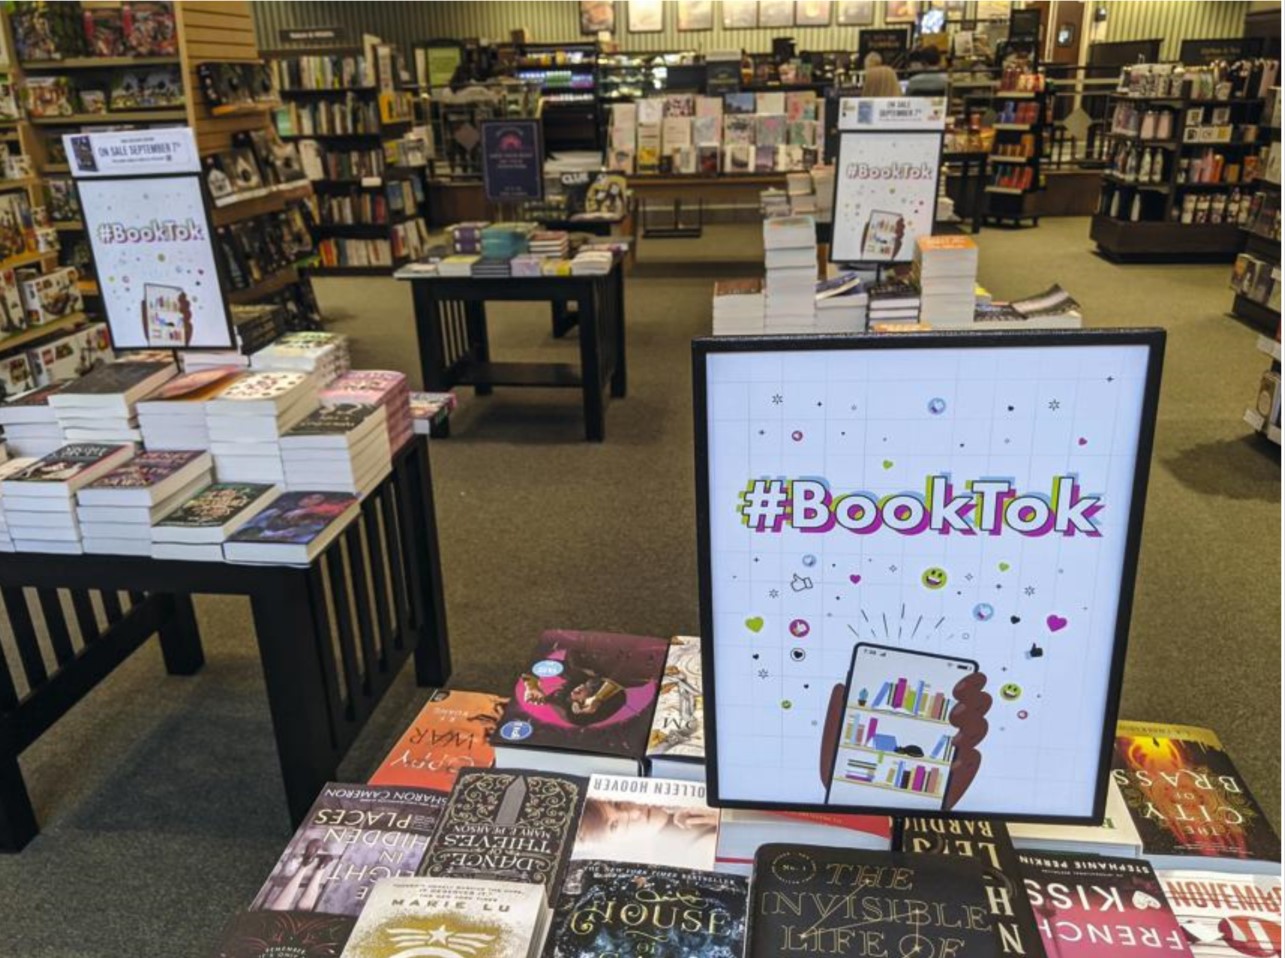 Face à la montée du phénomène BookTok, certains libraires ont décidé de mettre en avant, dans leurs vitrines, les titres vantés par les jeunes influenceurs sur le réseau. SIPA/AP/Tali Arbel